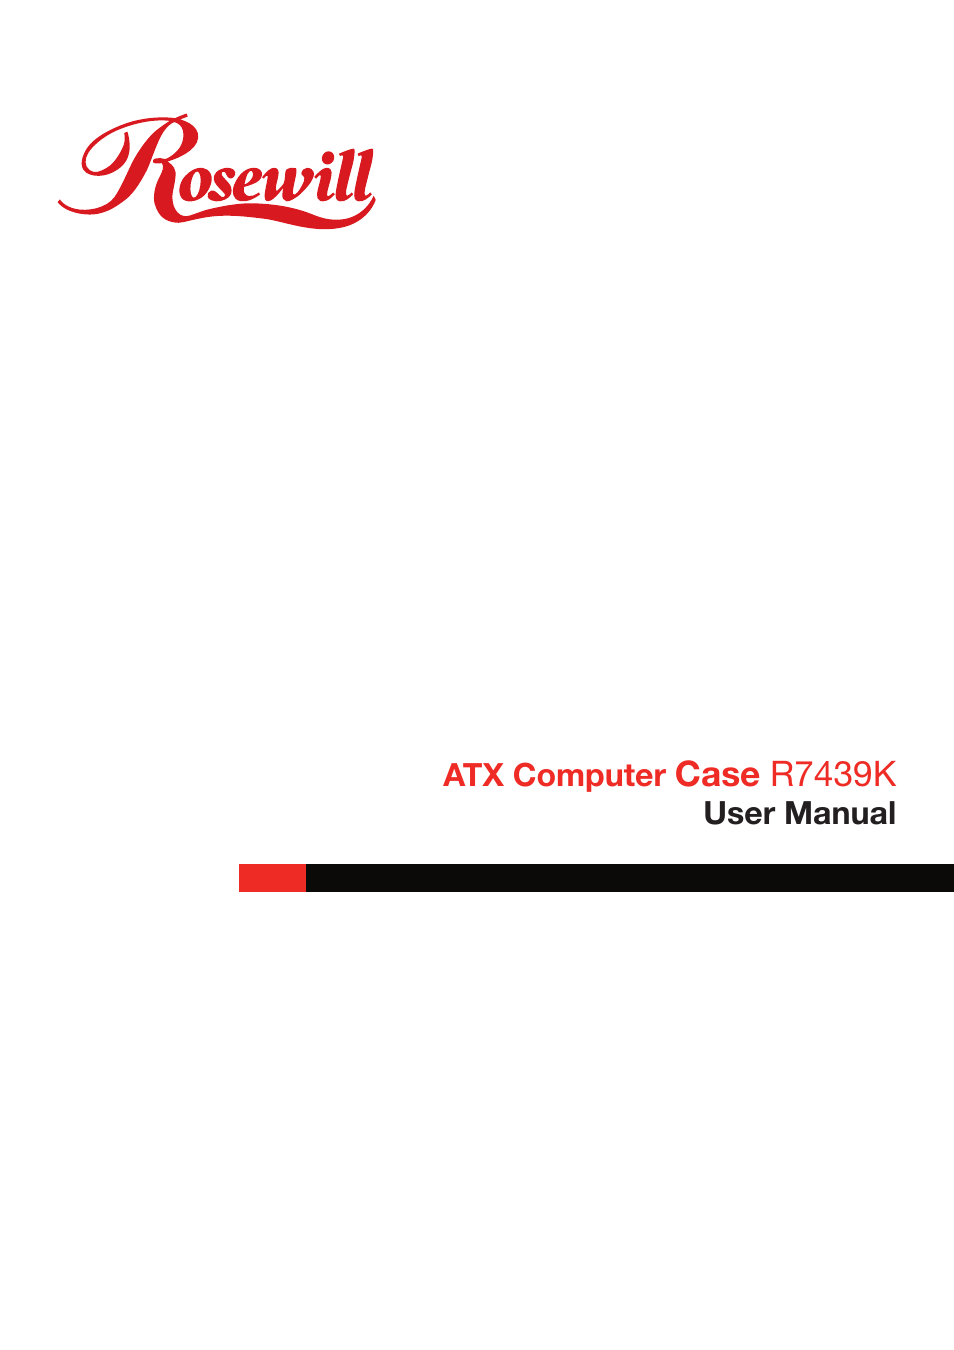 ATX COMPUTER CASE R7439K